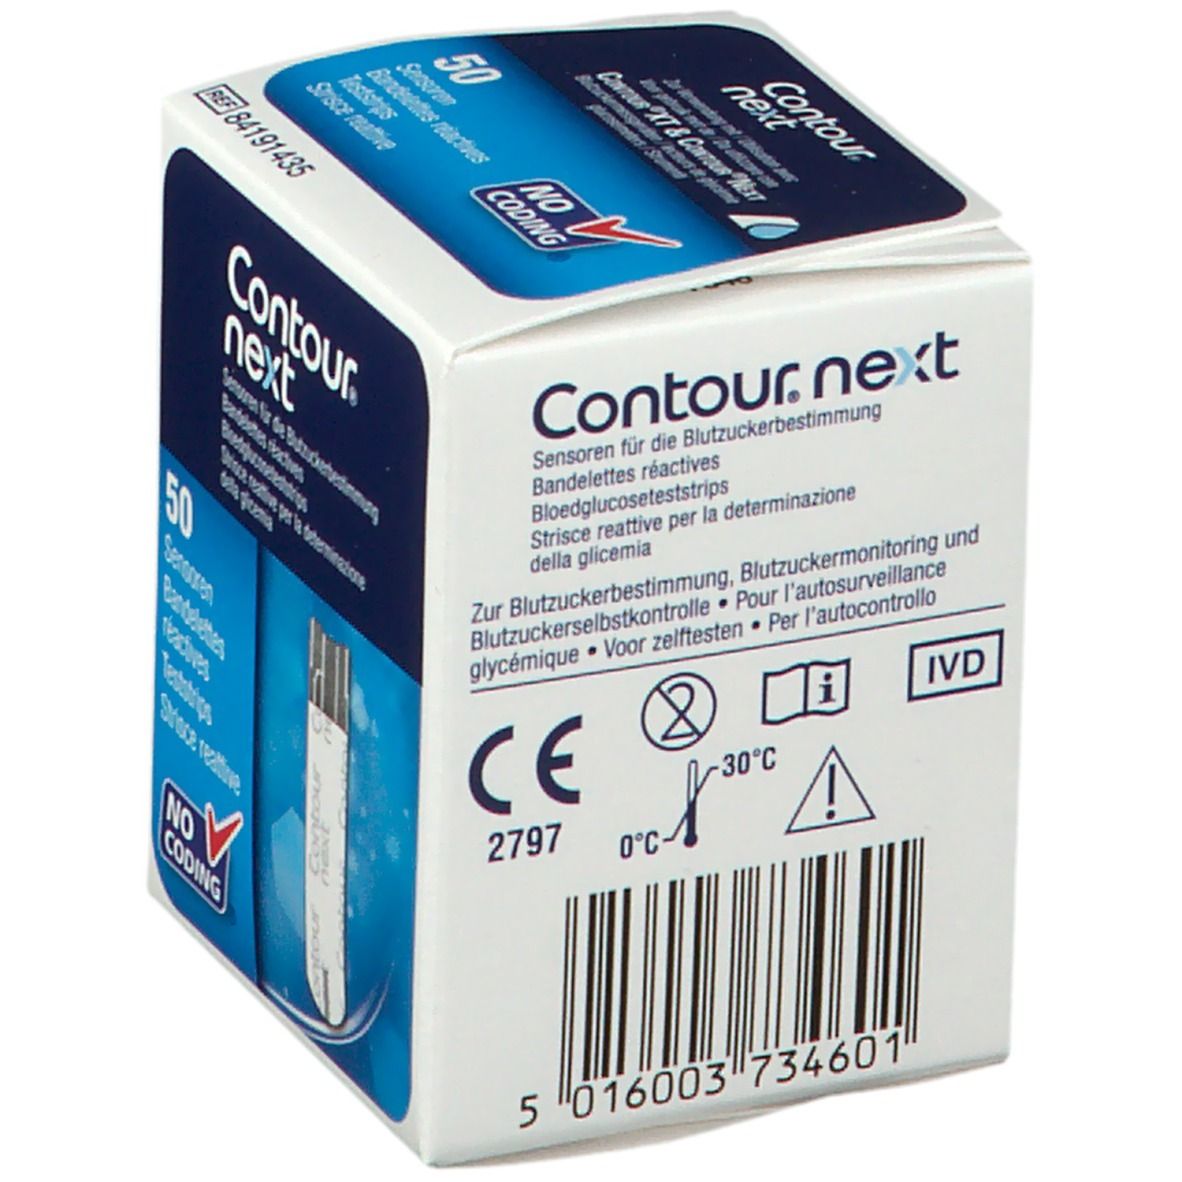 Contour next® Strisce Reattive